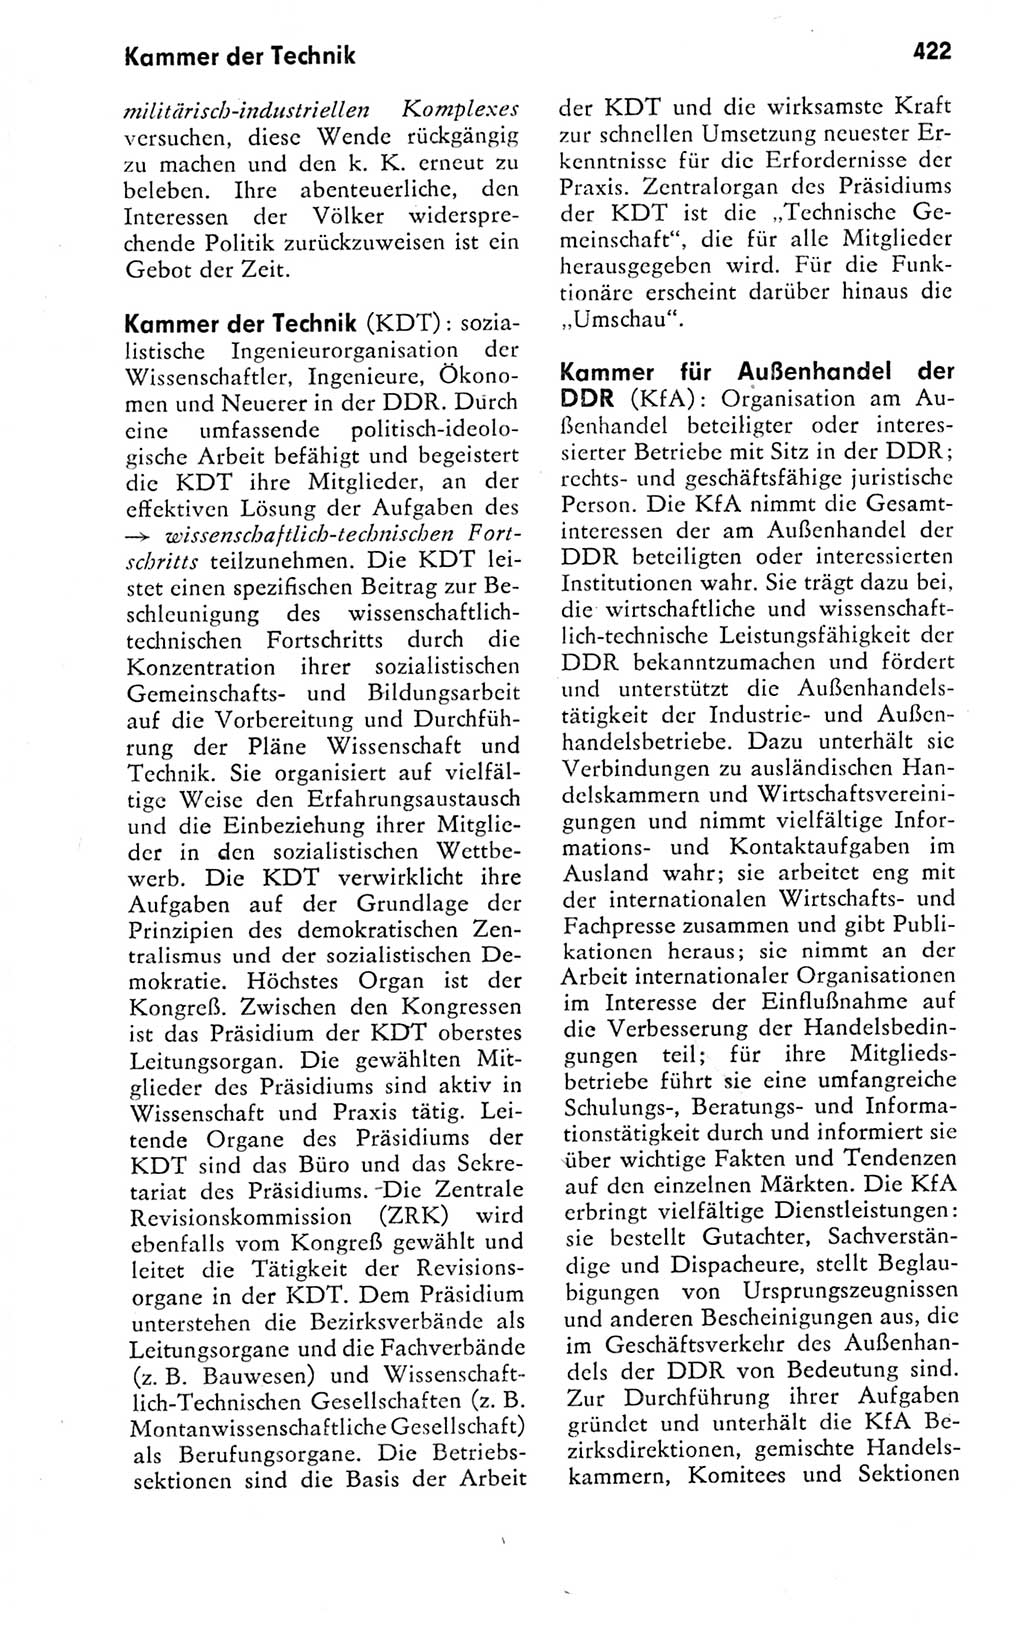 Kleines politisches Wörterbuch [Deutsche Demokratische Republik (DDR)] 1978, Seite 422 (Kl. pol. Wb. DDR 1978, S. 422)